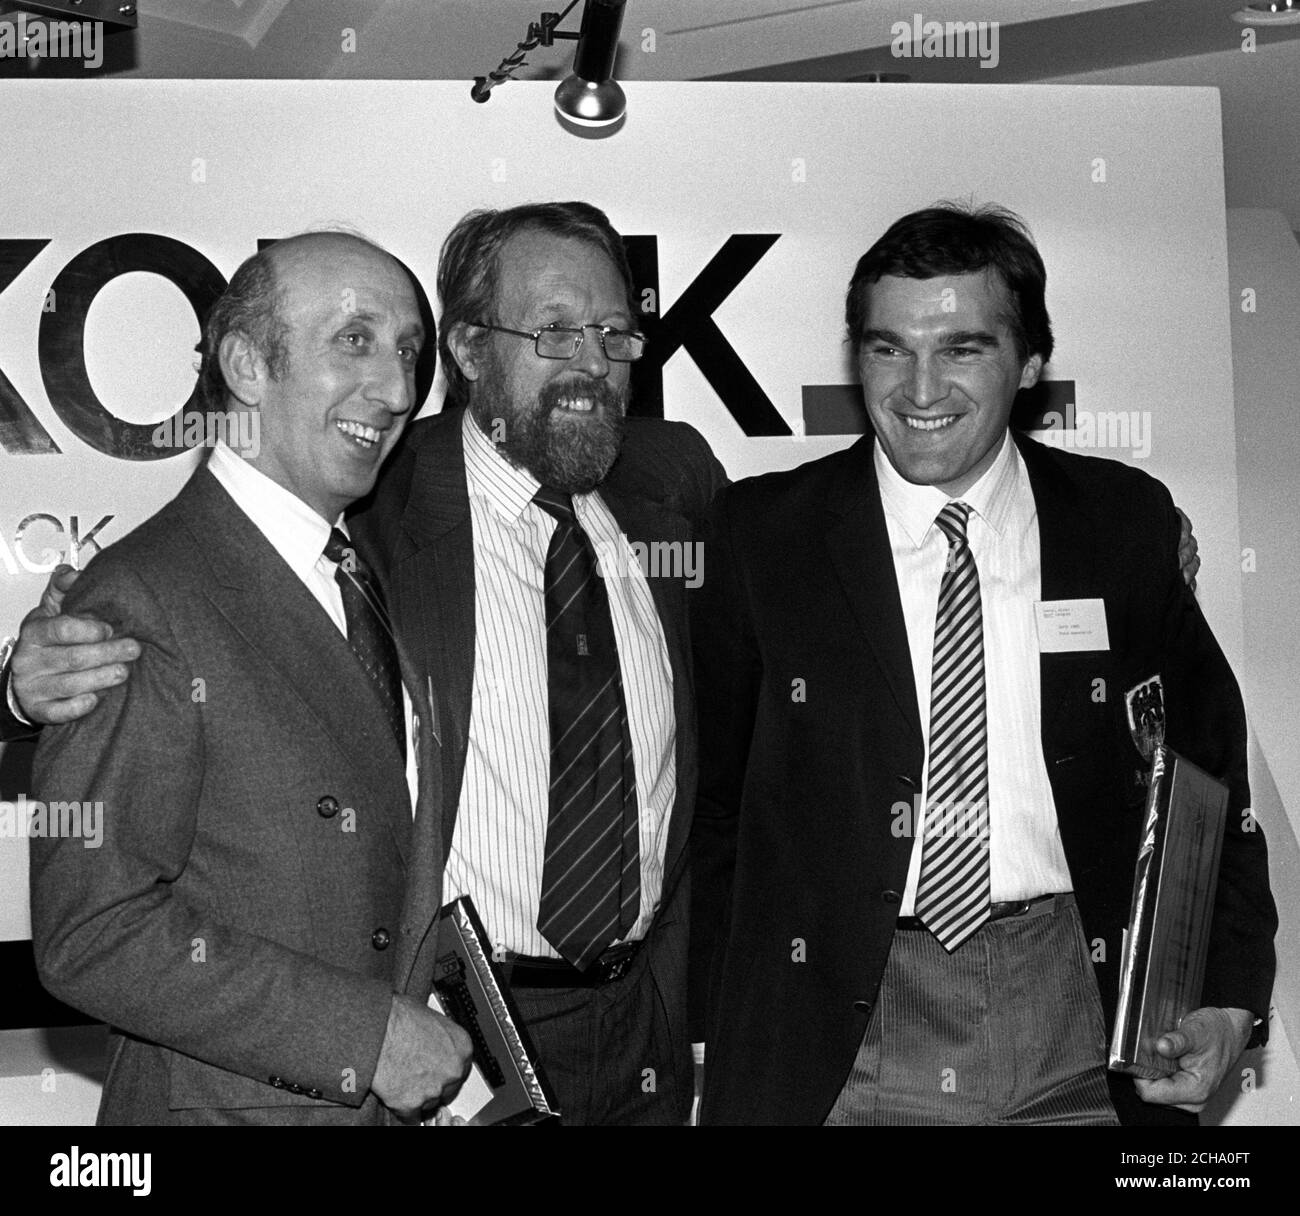 Presseverband Fotograf David Jones (r) mit seinem Kodak Sports Award 1987 (Er hält sein Bild -URN 1133733). Er steht neben Laurie Risidore (l) und Willie Rushton (Mitte). Stockfoto